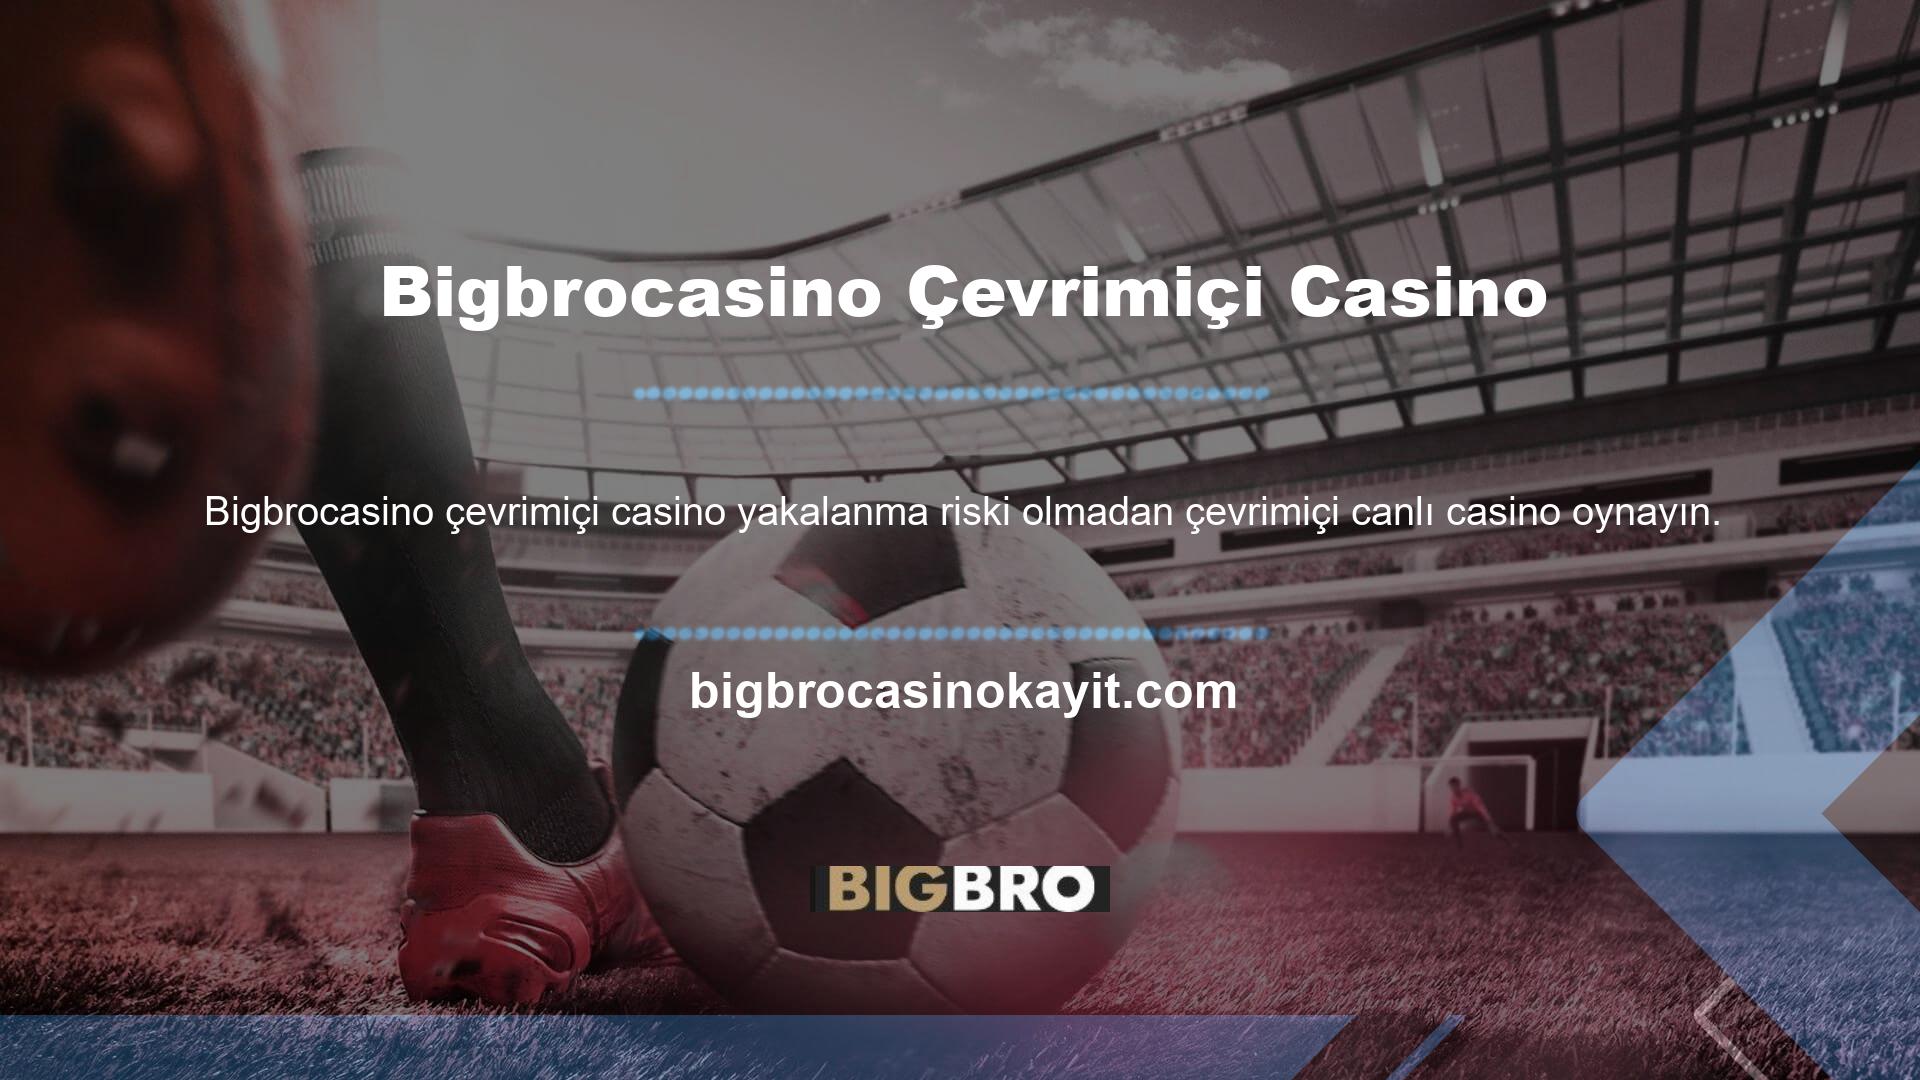 İnternet üzerinden canlı bahis ve casino oyunları oynayan bahis şirketlerinden biri olan Bigbrocasino bahis sitesi, casino tutkunlarının yeni bir tutkusu haline gelmiş olup, gelecekte de bahis tutkunlarına birçok fırsat sunacaktır